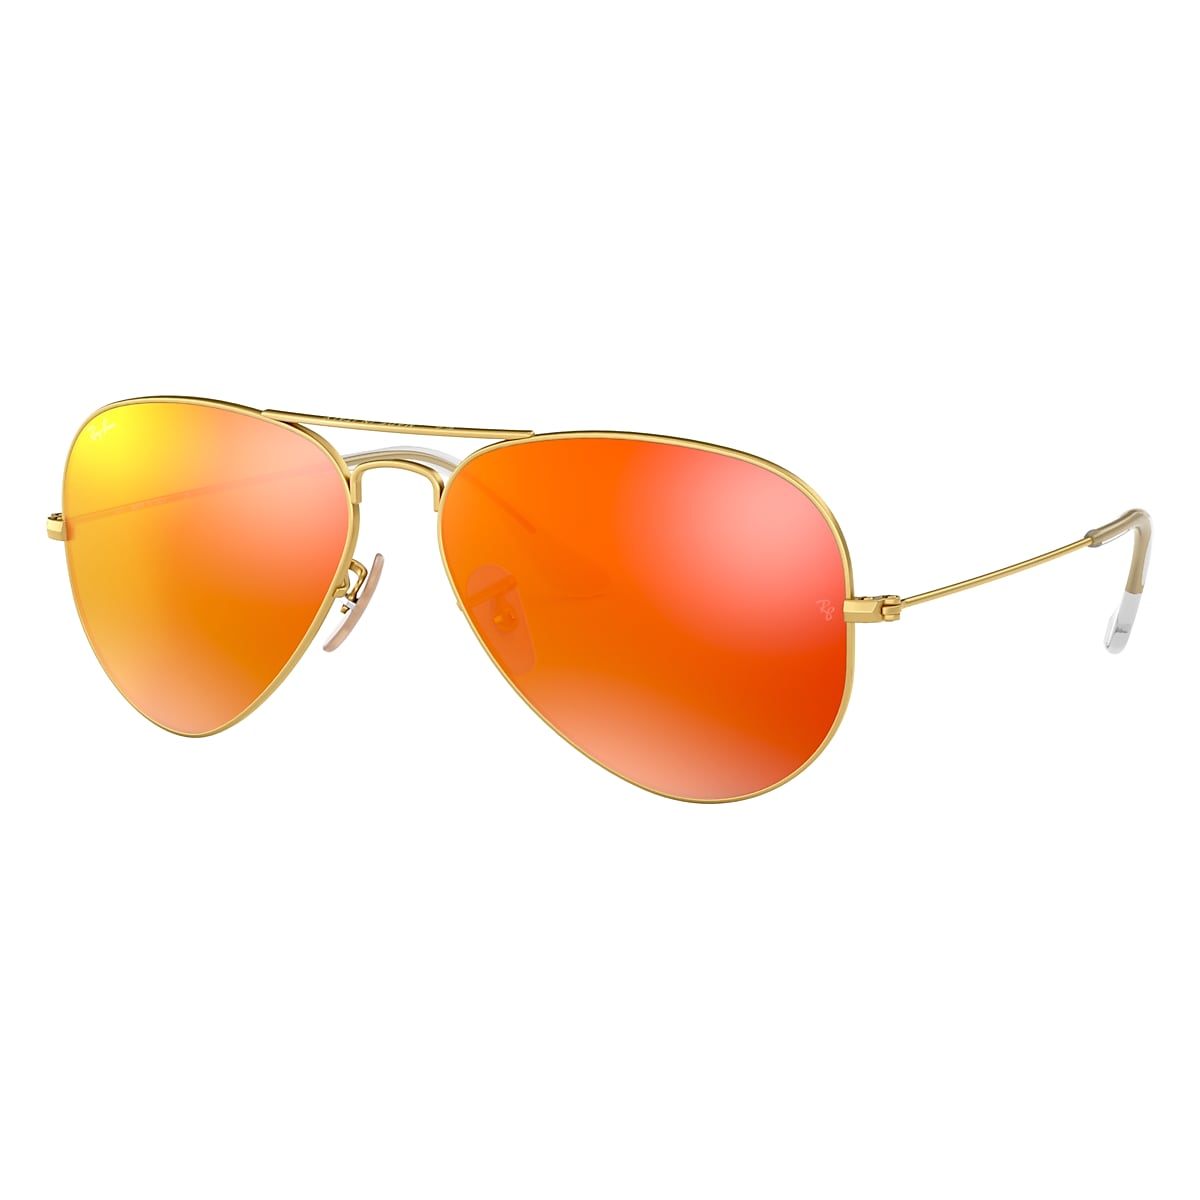 Las bacterias absorción cebolla Gafas de Sol Aviator Flash Lenses en Oro y Naranja | Ray-Ban®